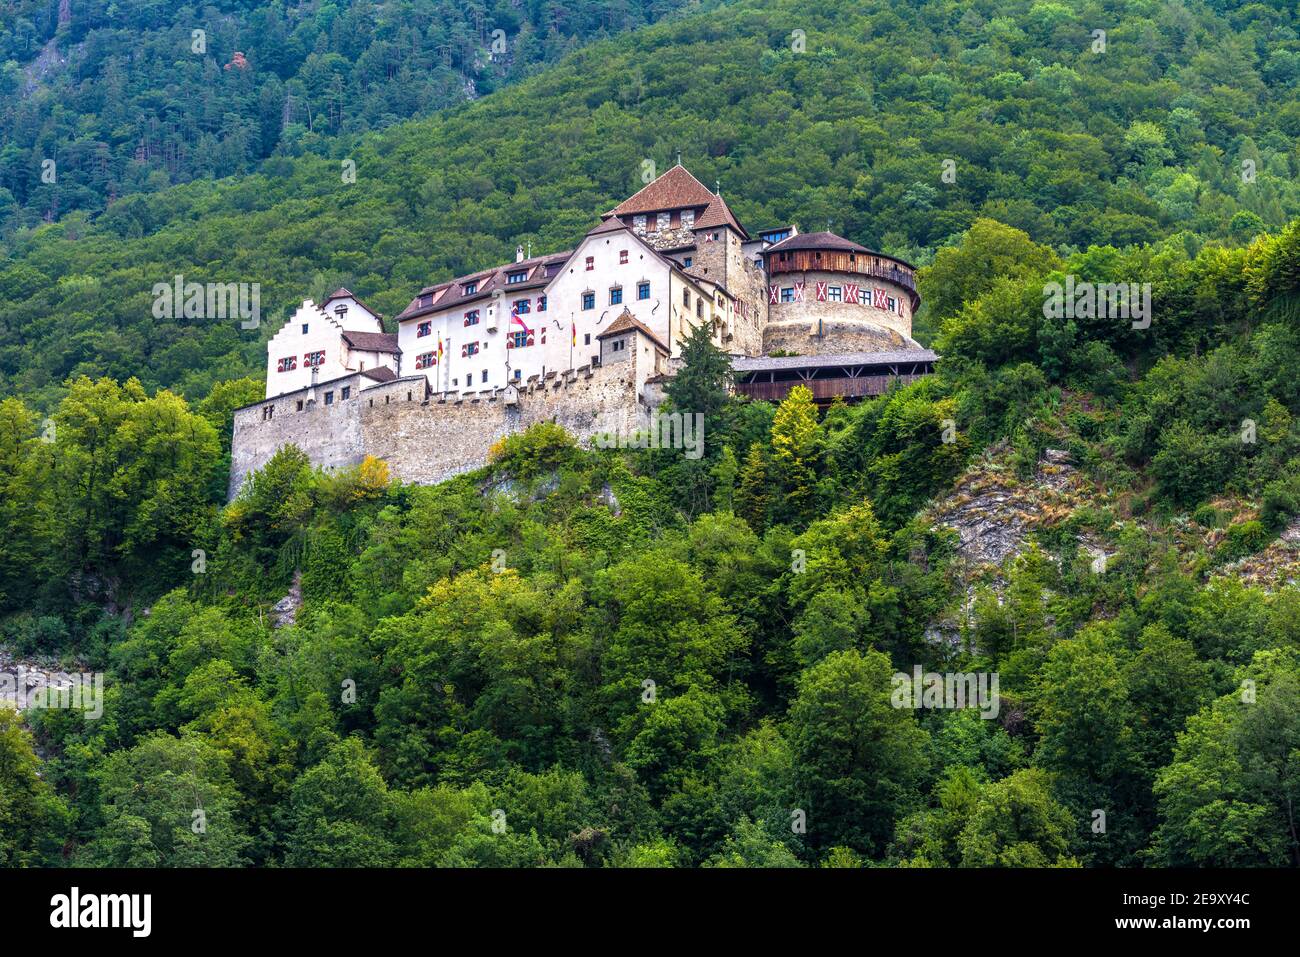 Castello di Vaduz nel Liechtenstein, in Europa. E' un punto di riferimento del Liechtenstein e della Svizzera. Paesaggio di verde collina con castello come palazzo. Old Royal Foto Stock